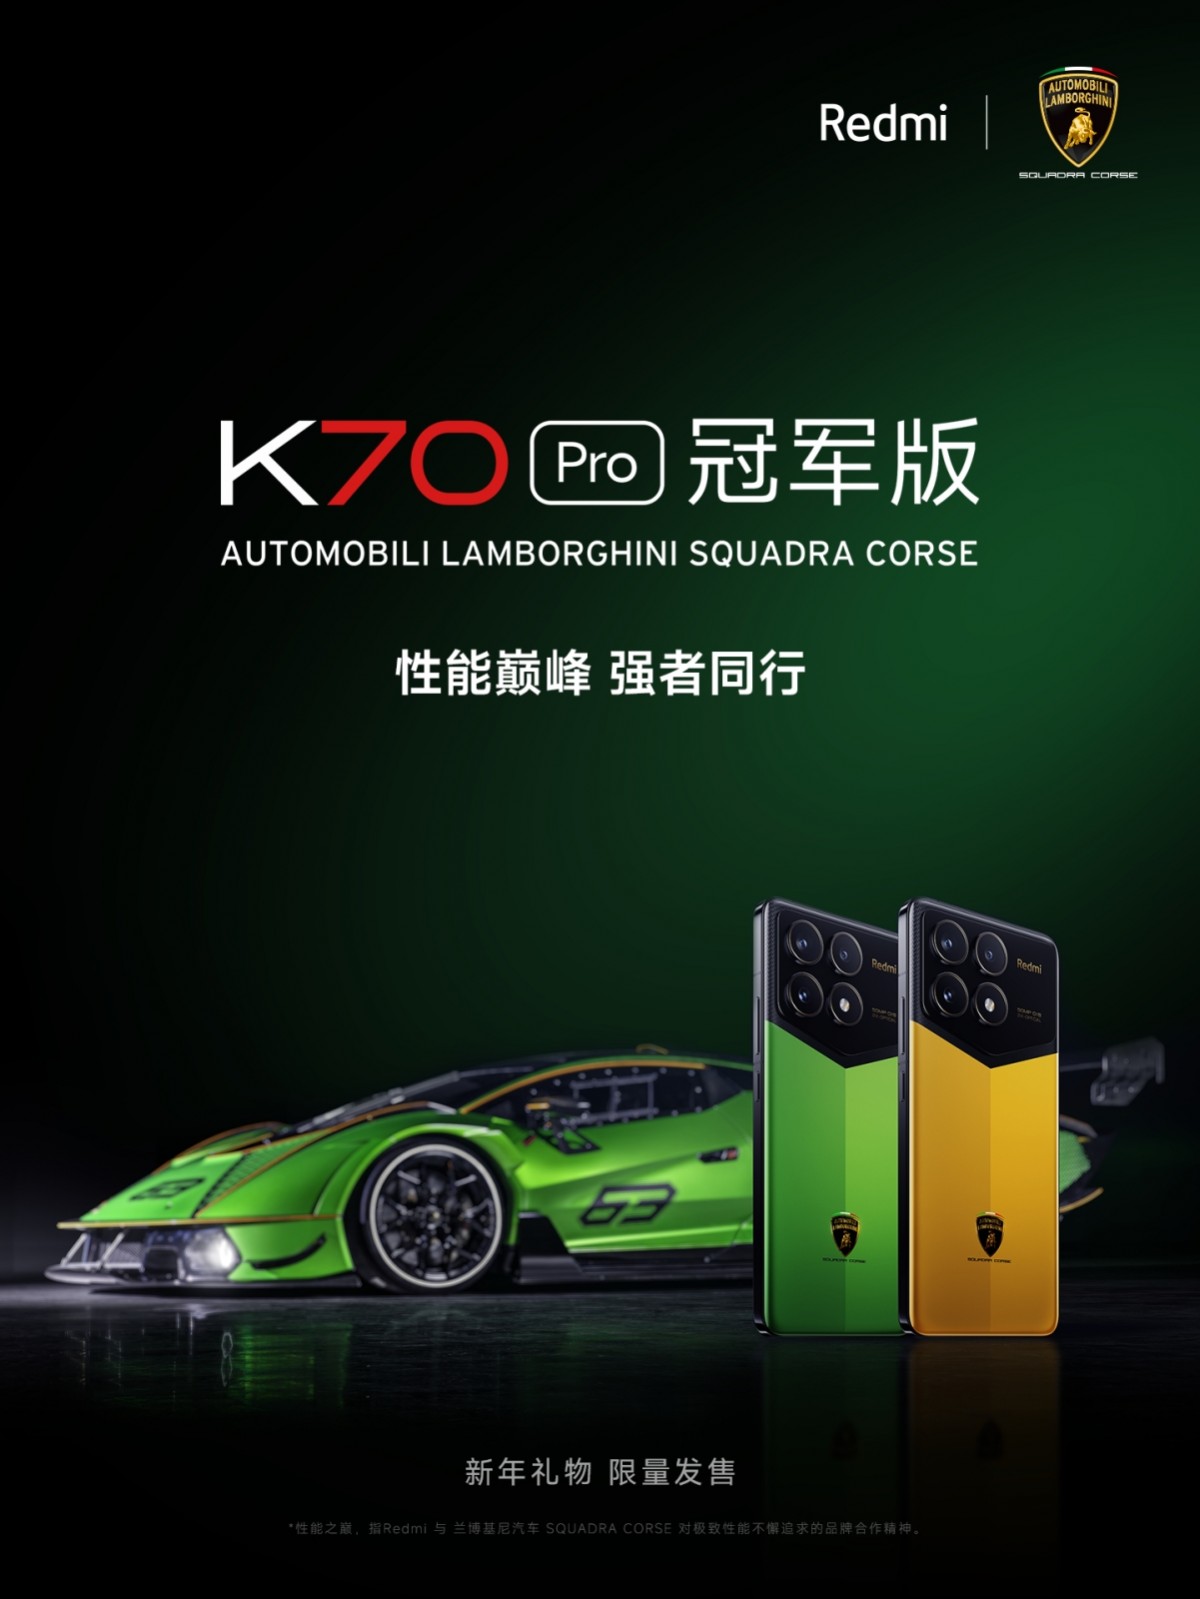 Redmi K70 Pro Automobili Lamborghini Squadra Corse comes with 24 GB RAM, 1 TB storage